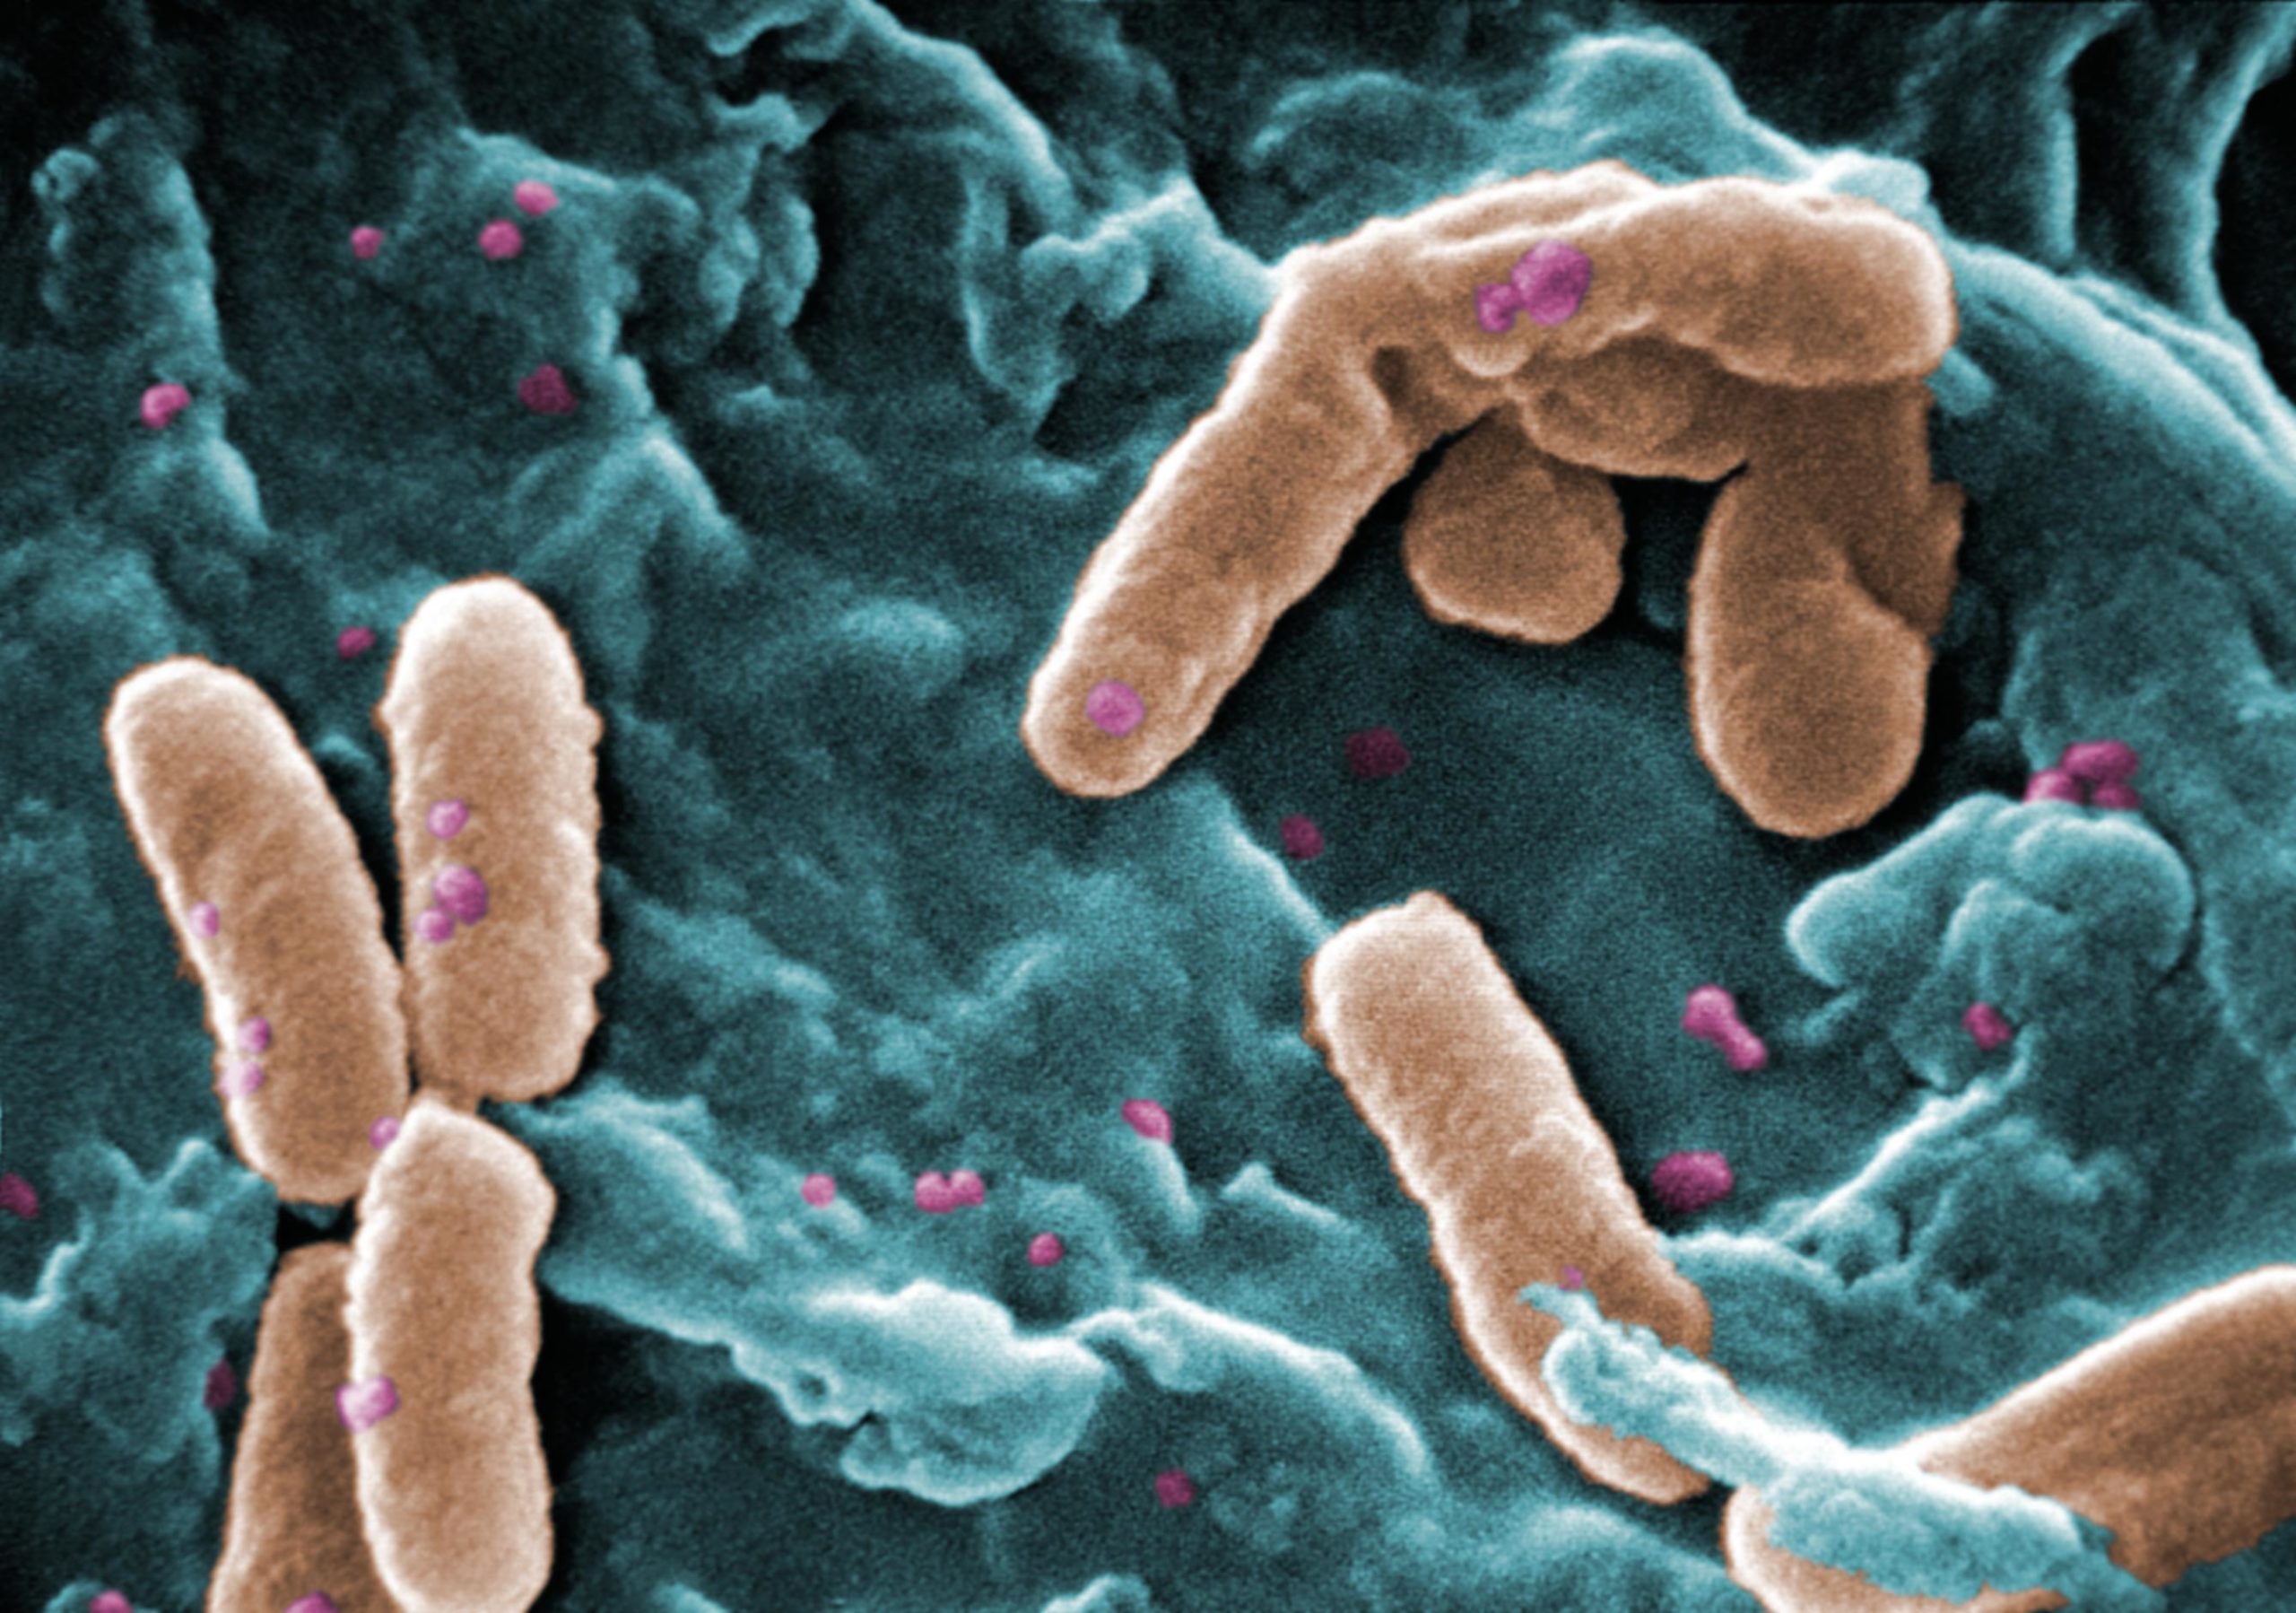 Image of Pseudomonas bacteria